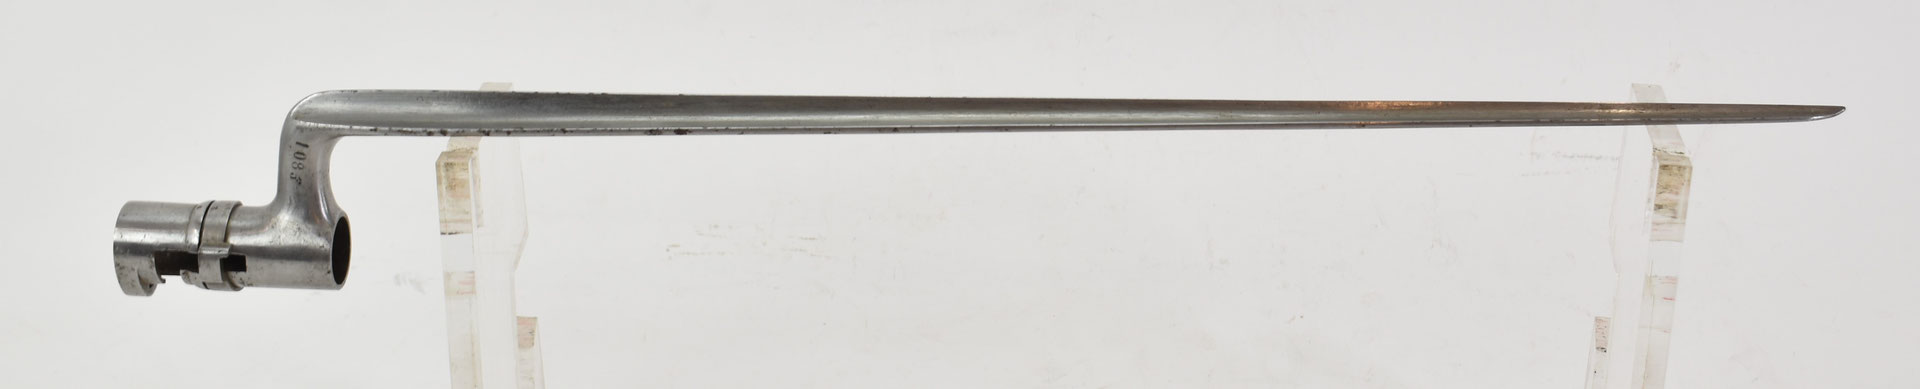 baionnette mle 1822 modifié dite 1847